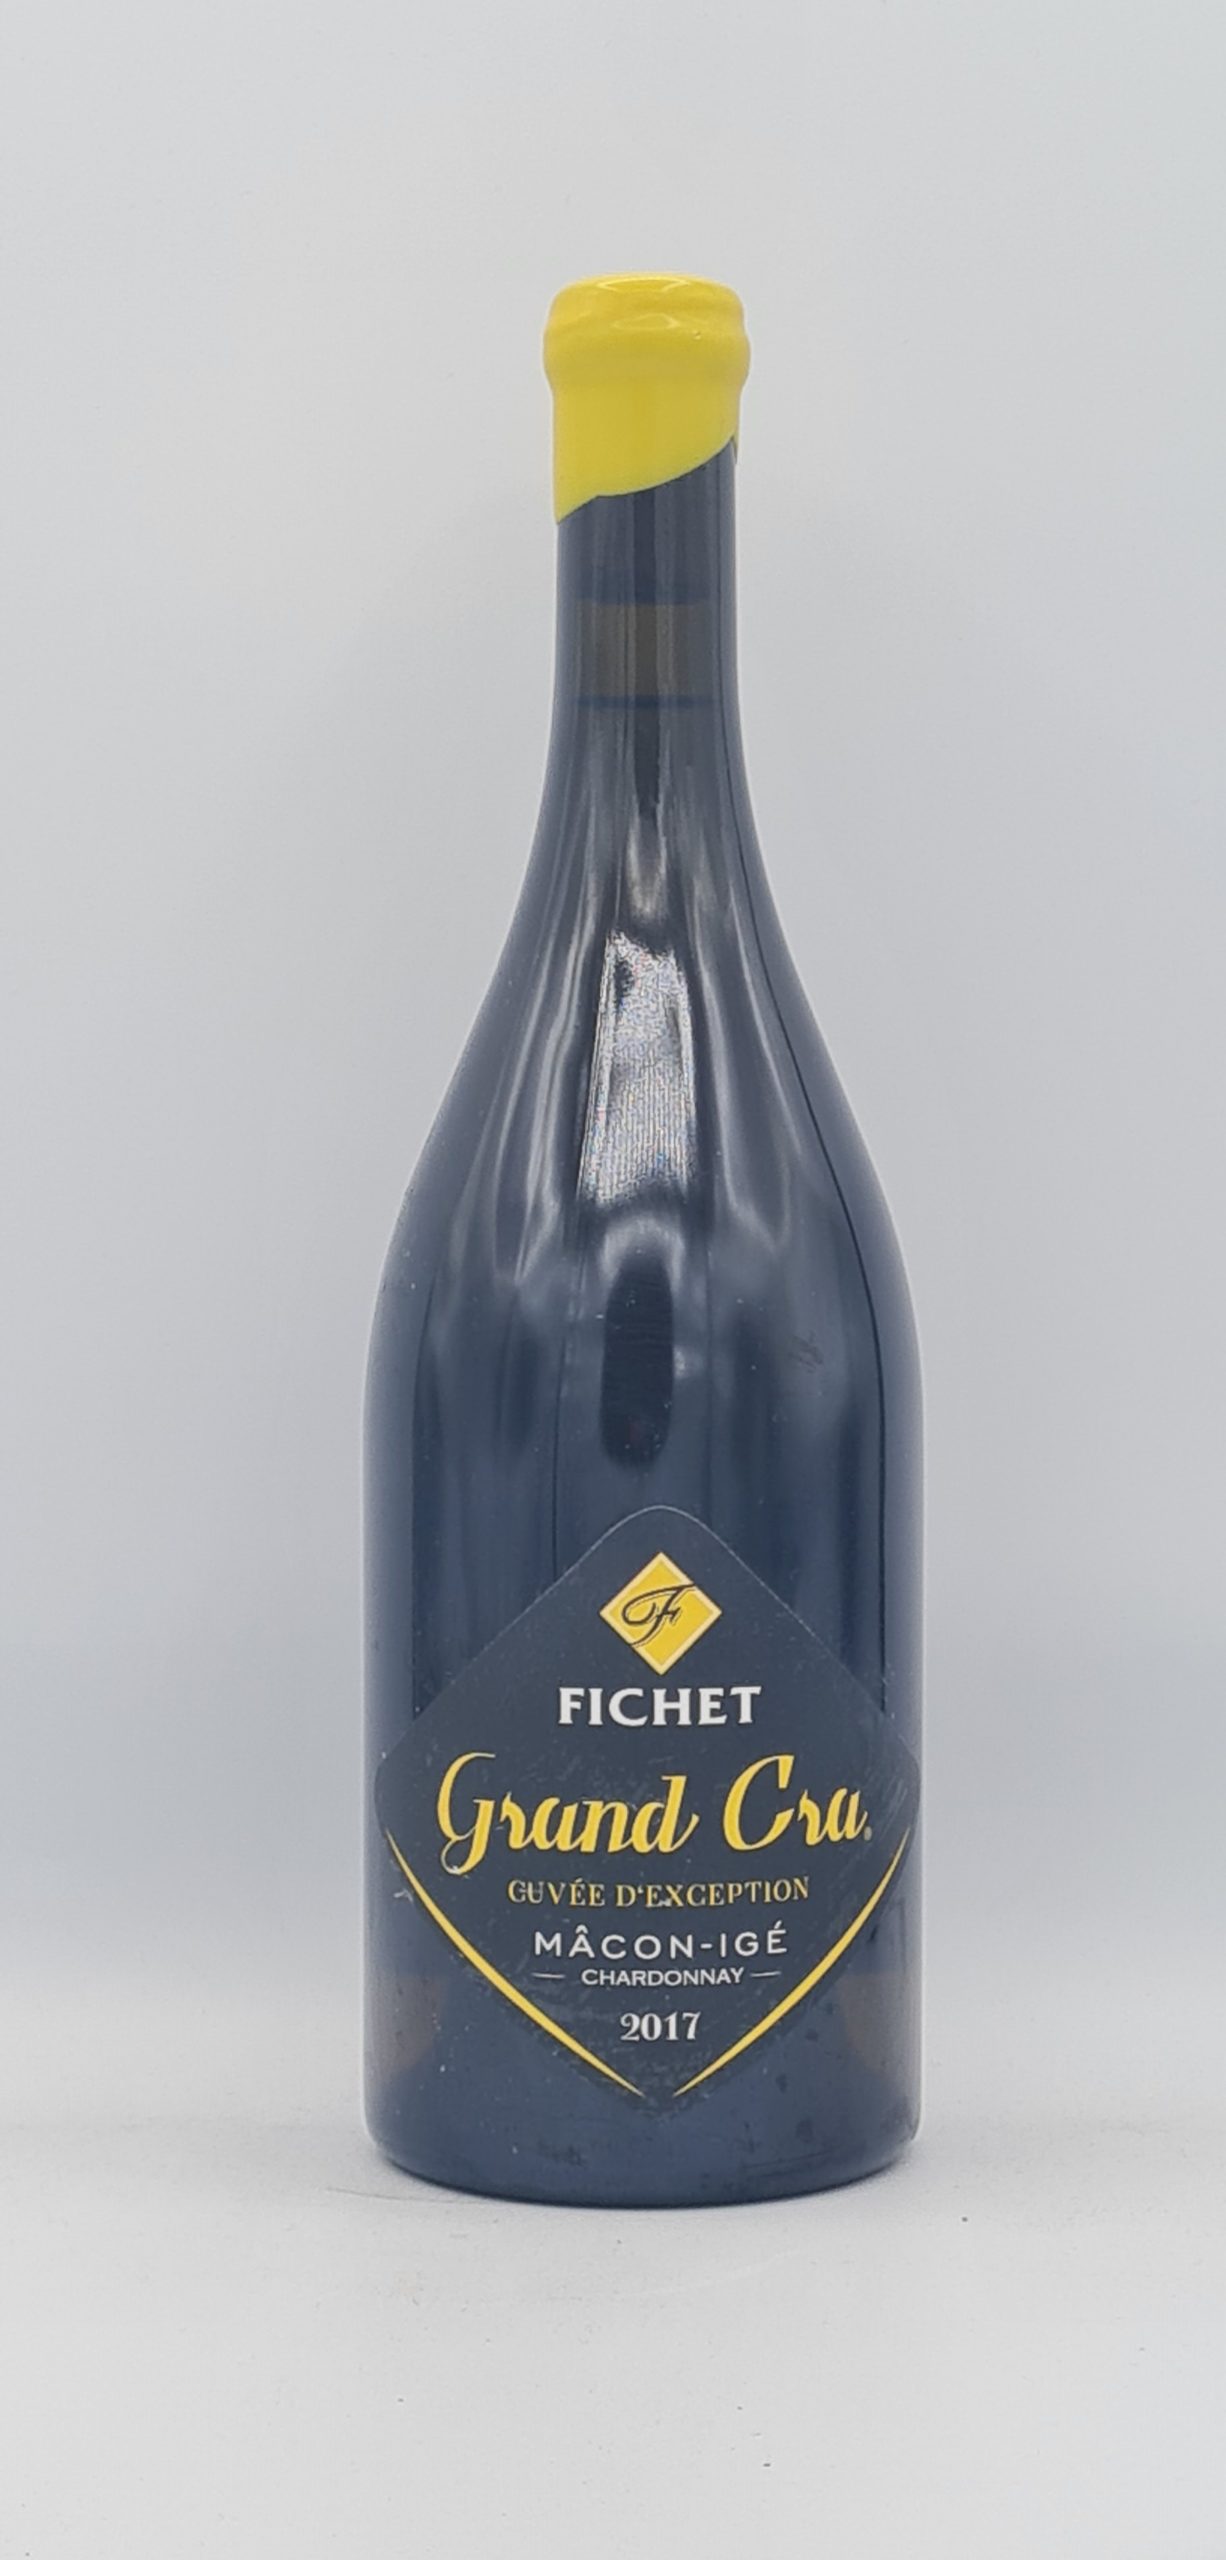 Bourgogne Mâcon-Igé “Grand Cra” 2017 Domaine Fichet